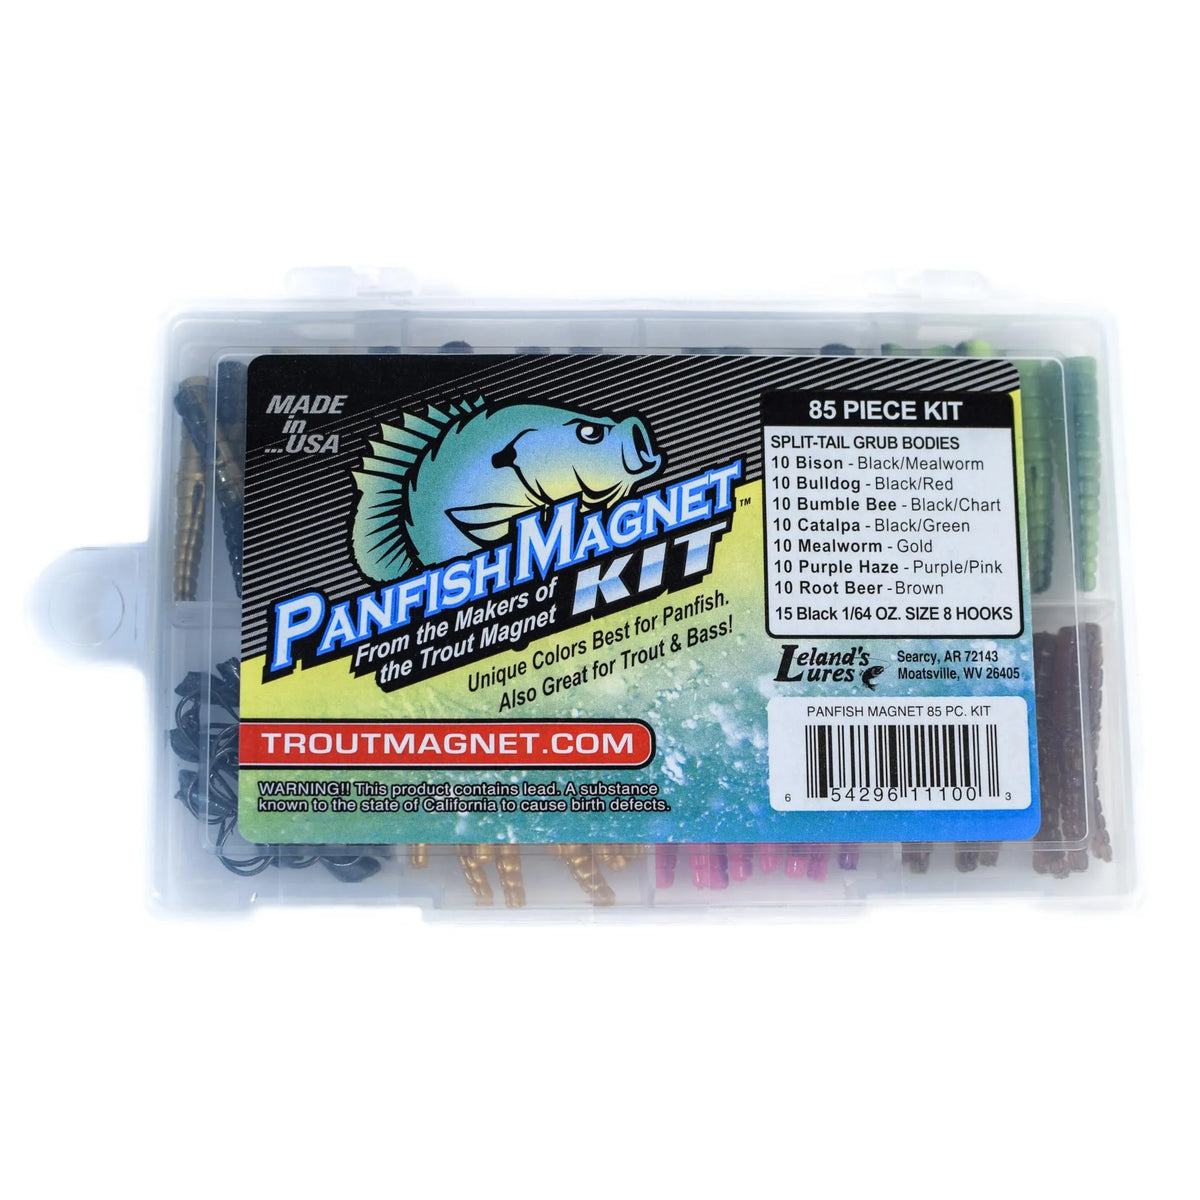 Leland Lures Panfish Magnet Kit – Outdoor America